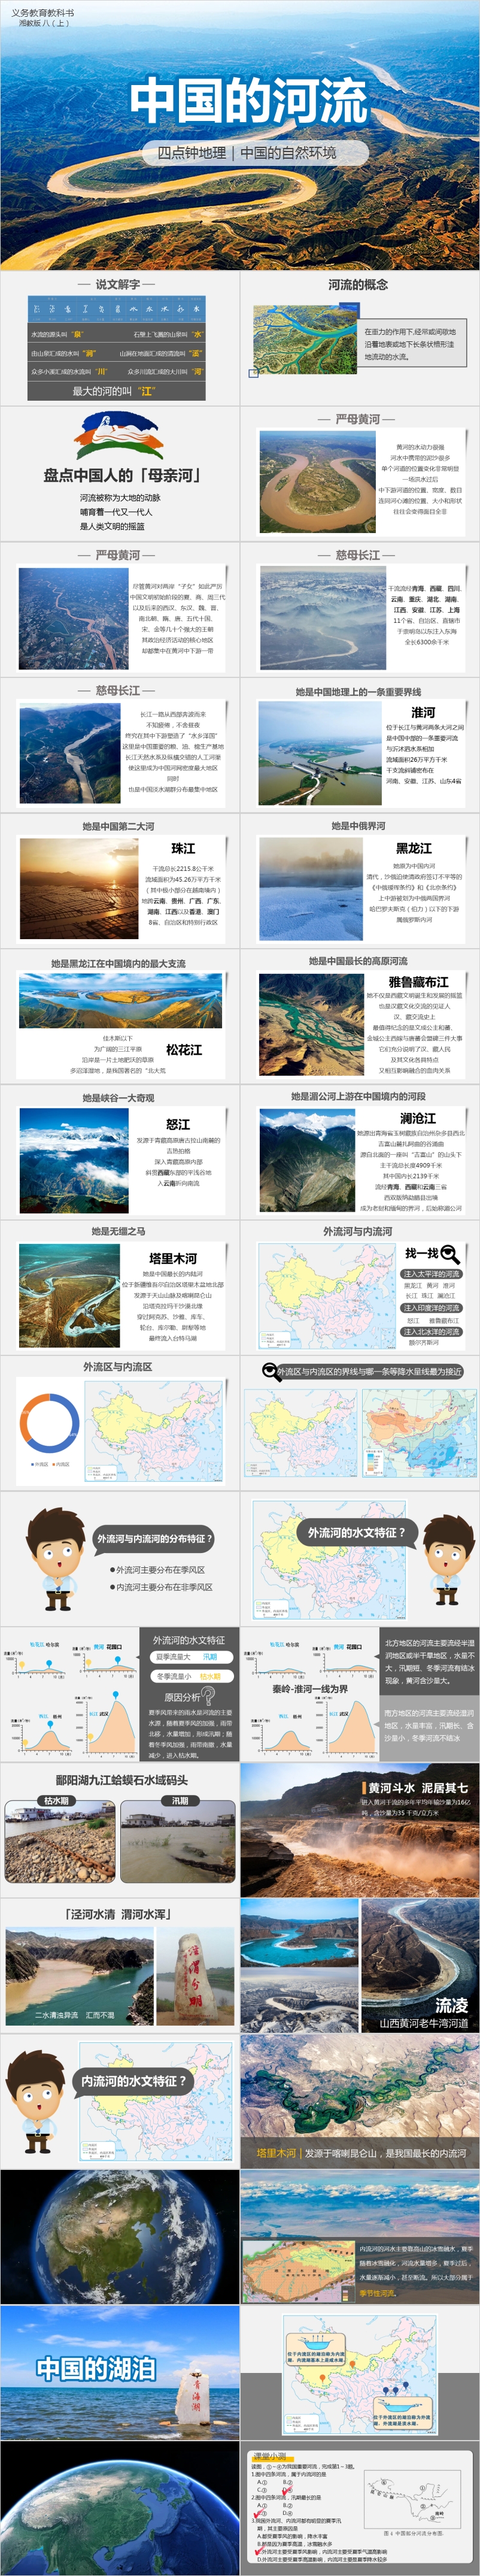 2019中国的河流与湖泊2.jpg